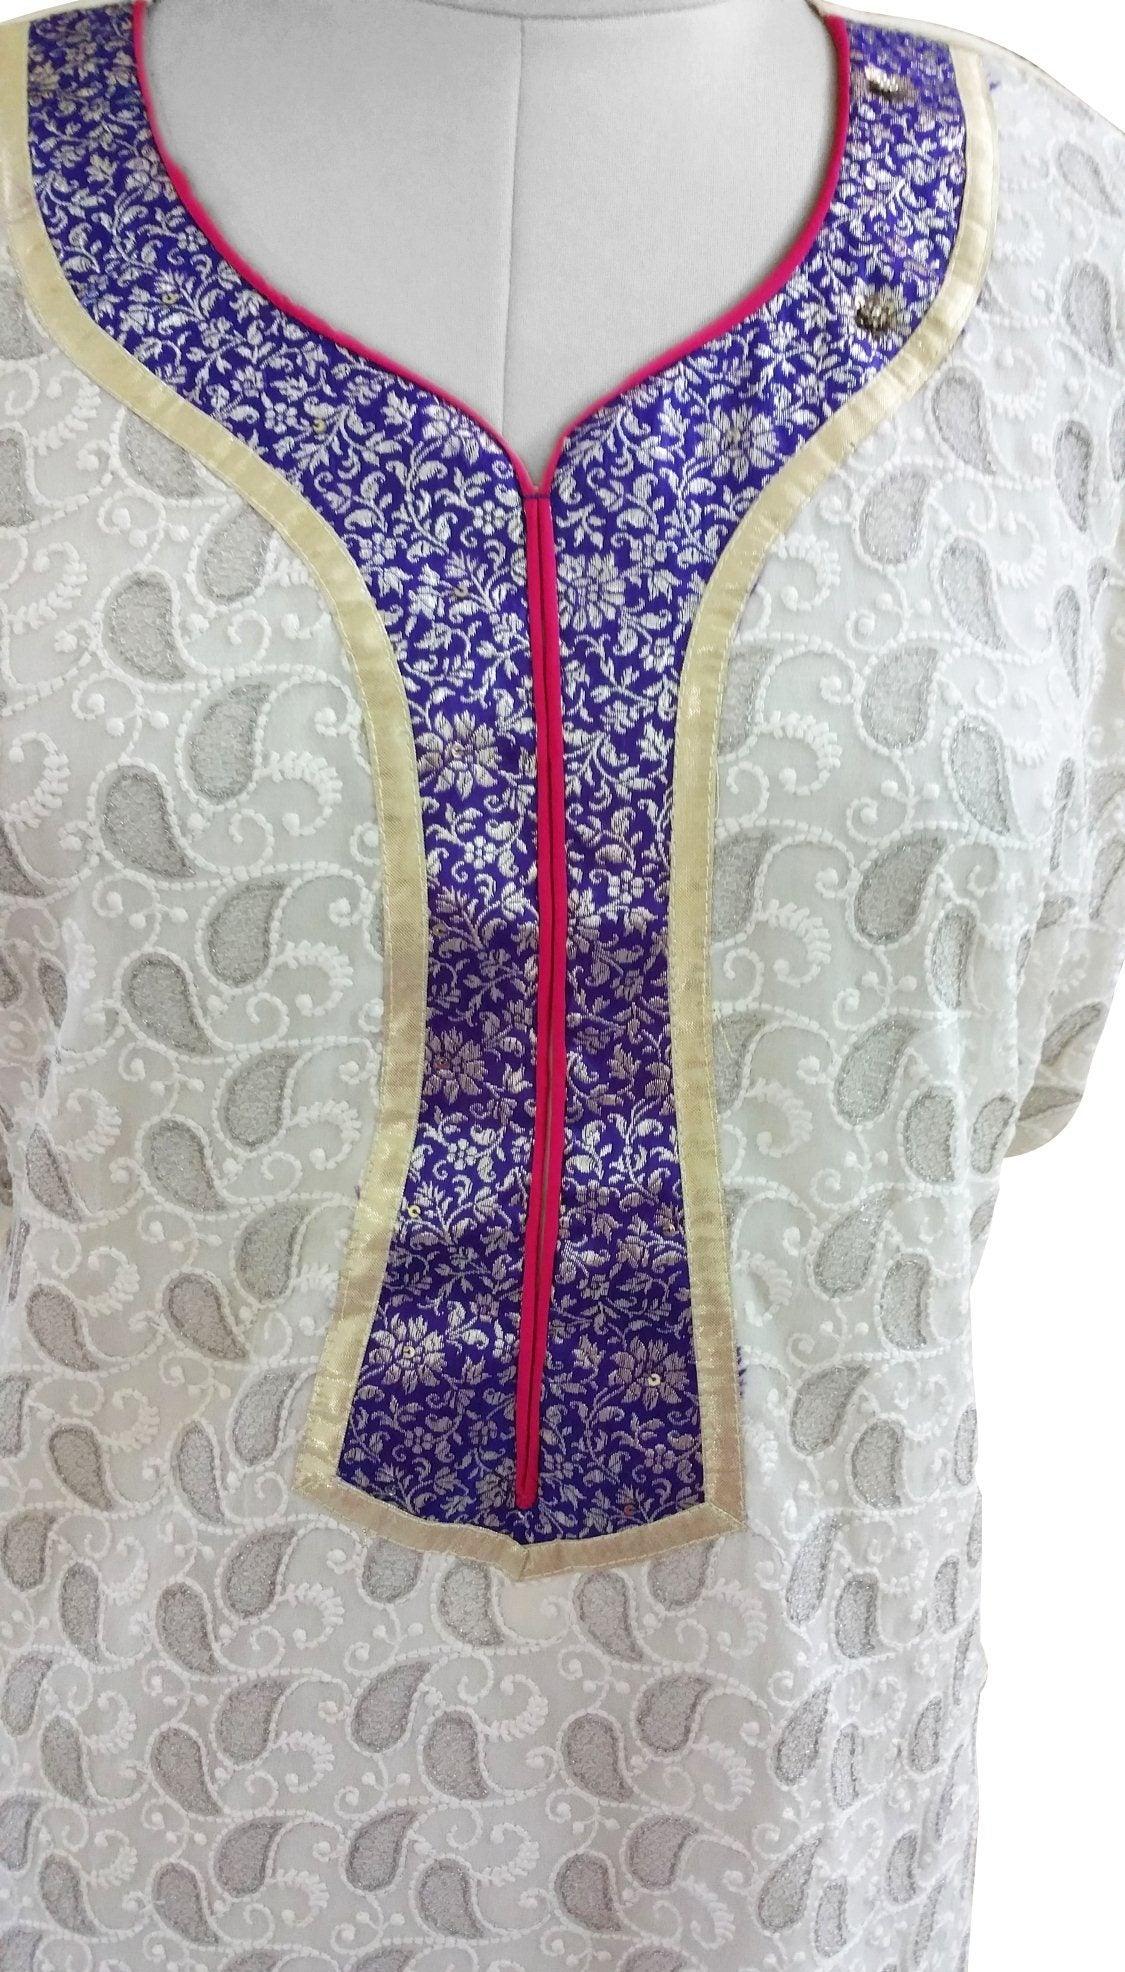 Off White Chiffon with Embroidery lining Semi-Stitched Kurta SC604-Anvi Creations-Kurta,Kurti,Top,Tunic